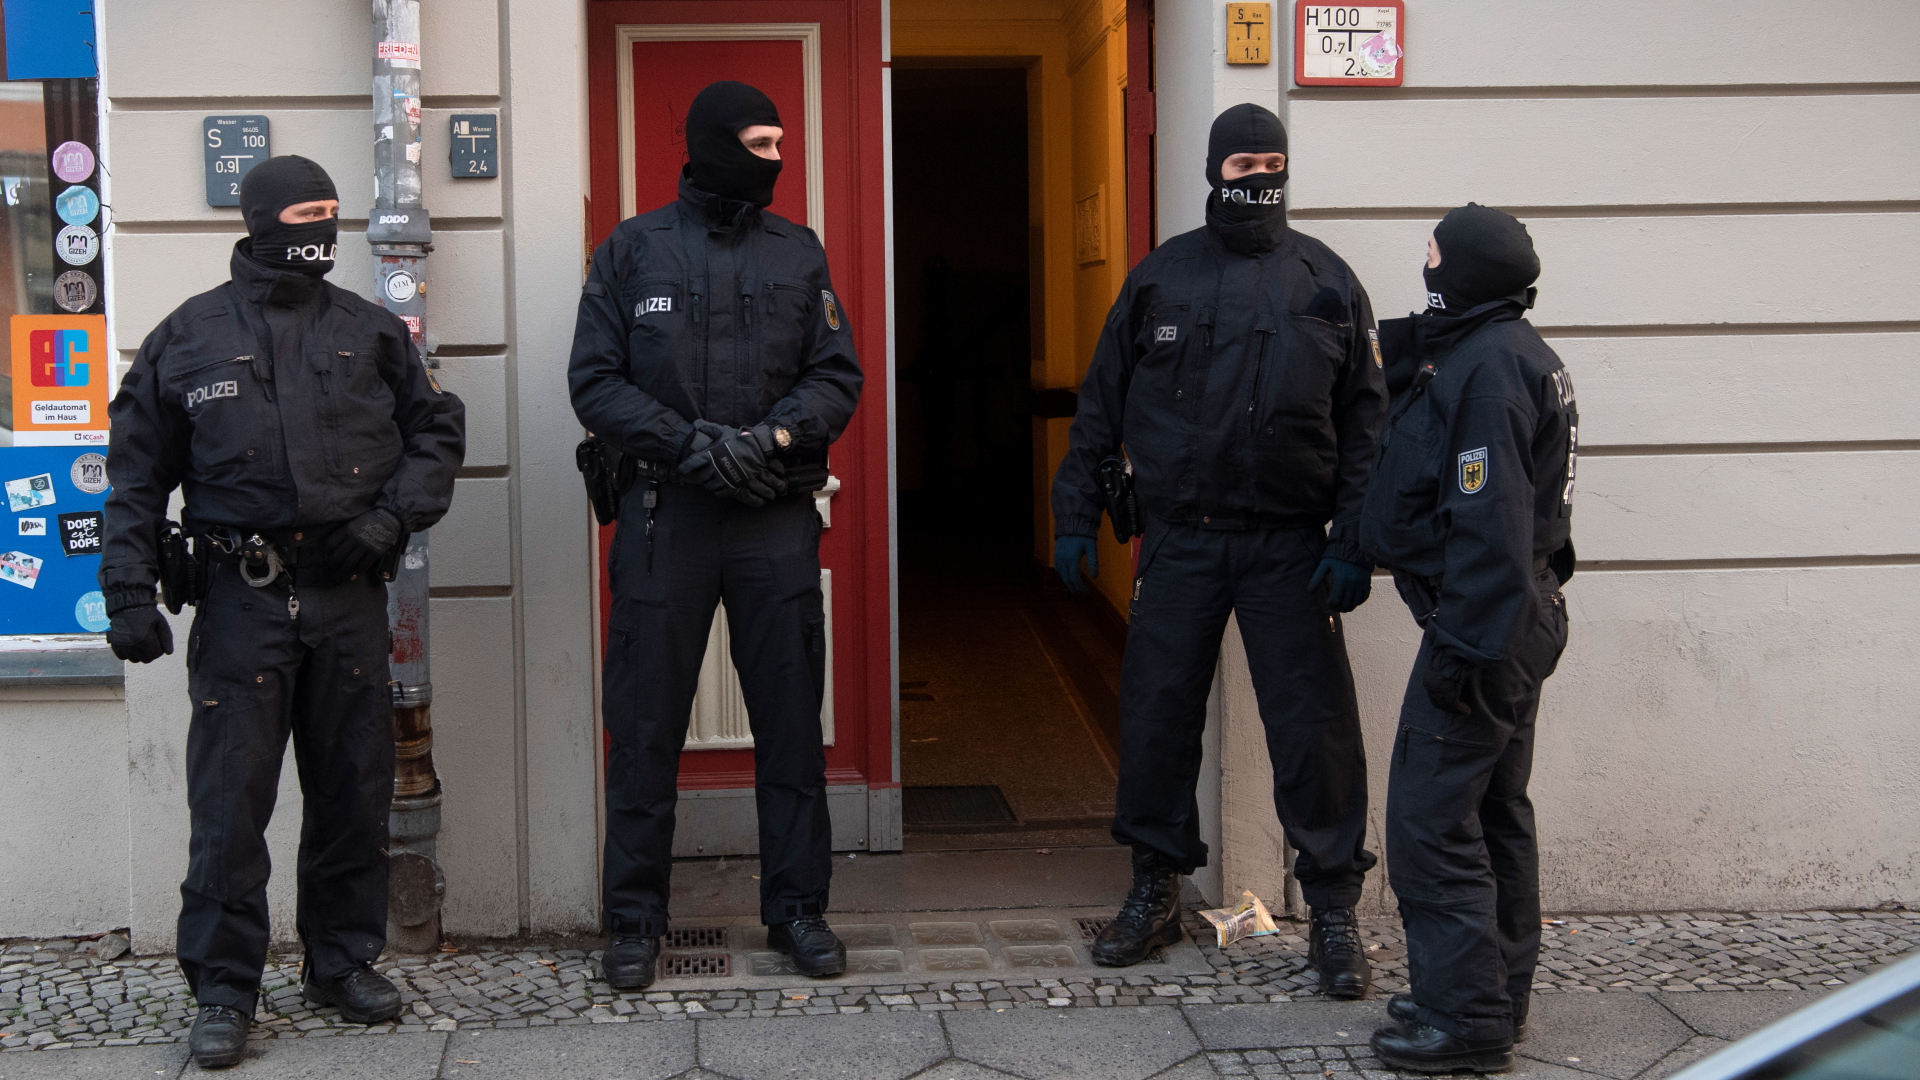 Polizisten stehen bei einer Razzia gegen eine mutmaßliche Schleuserbande an einer Eingangstür von einem Gebäude in Berlin | dpa